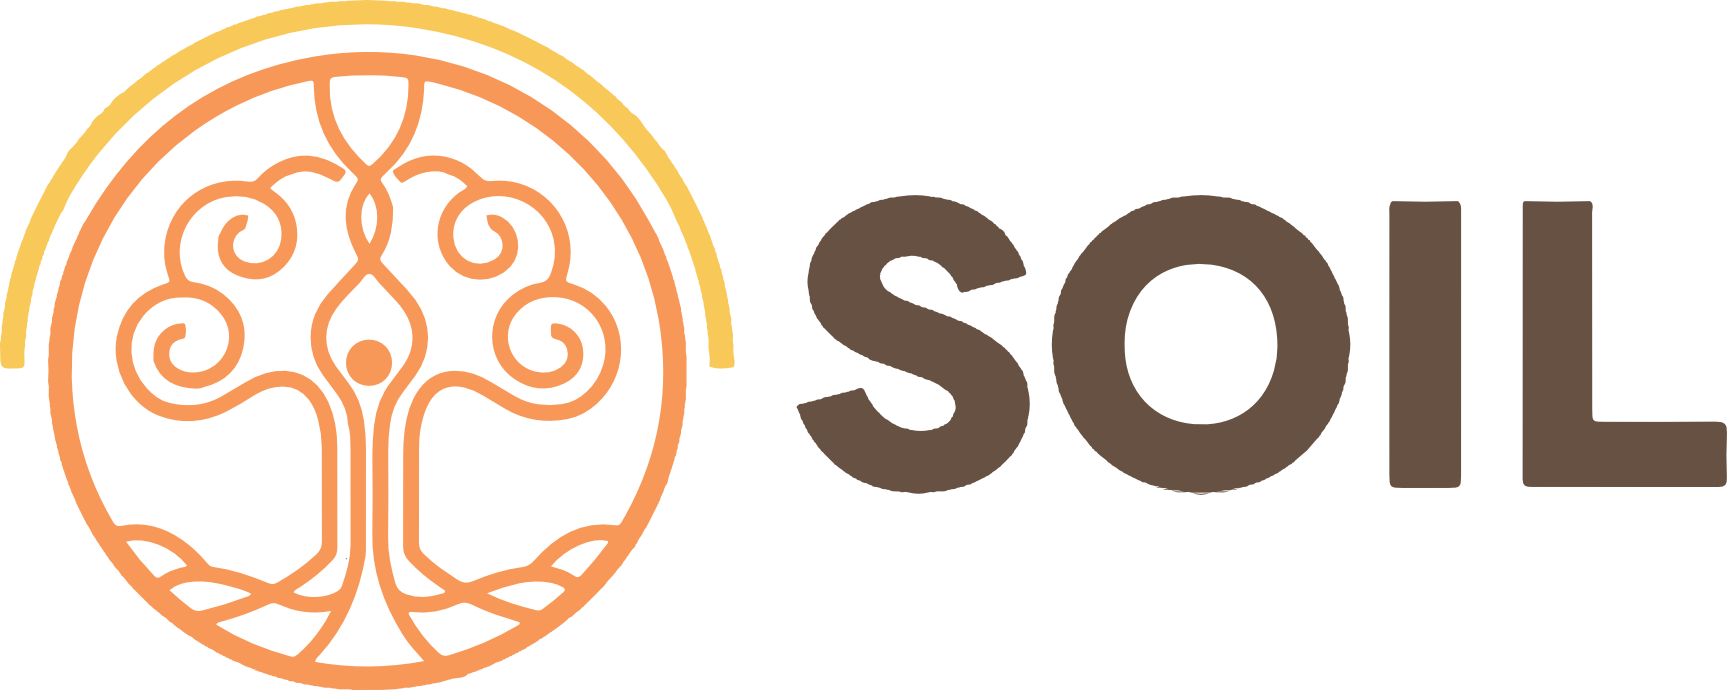 Soil-logo